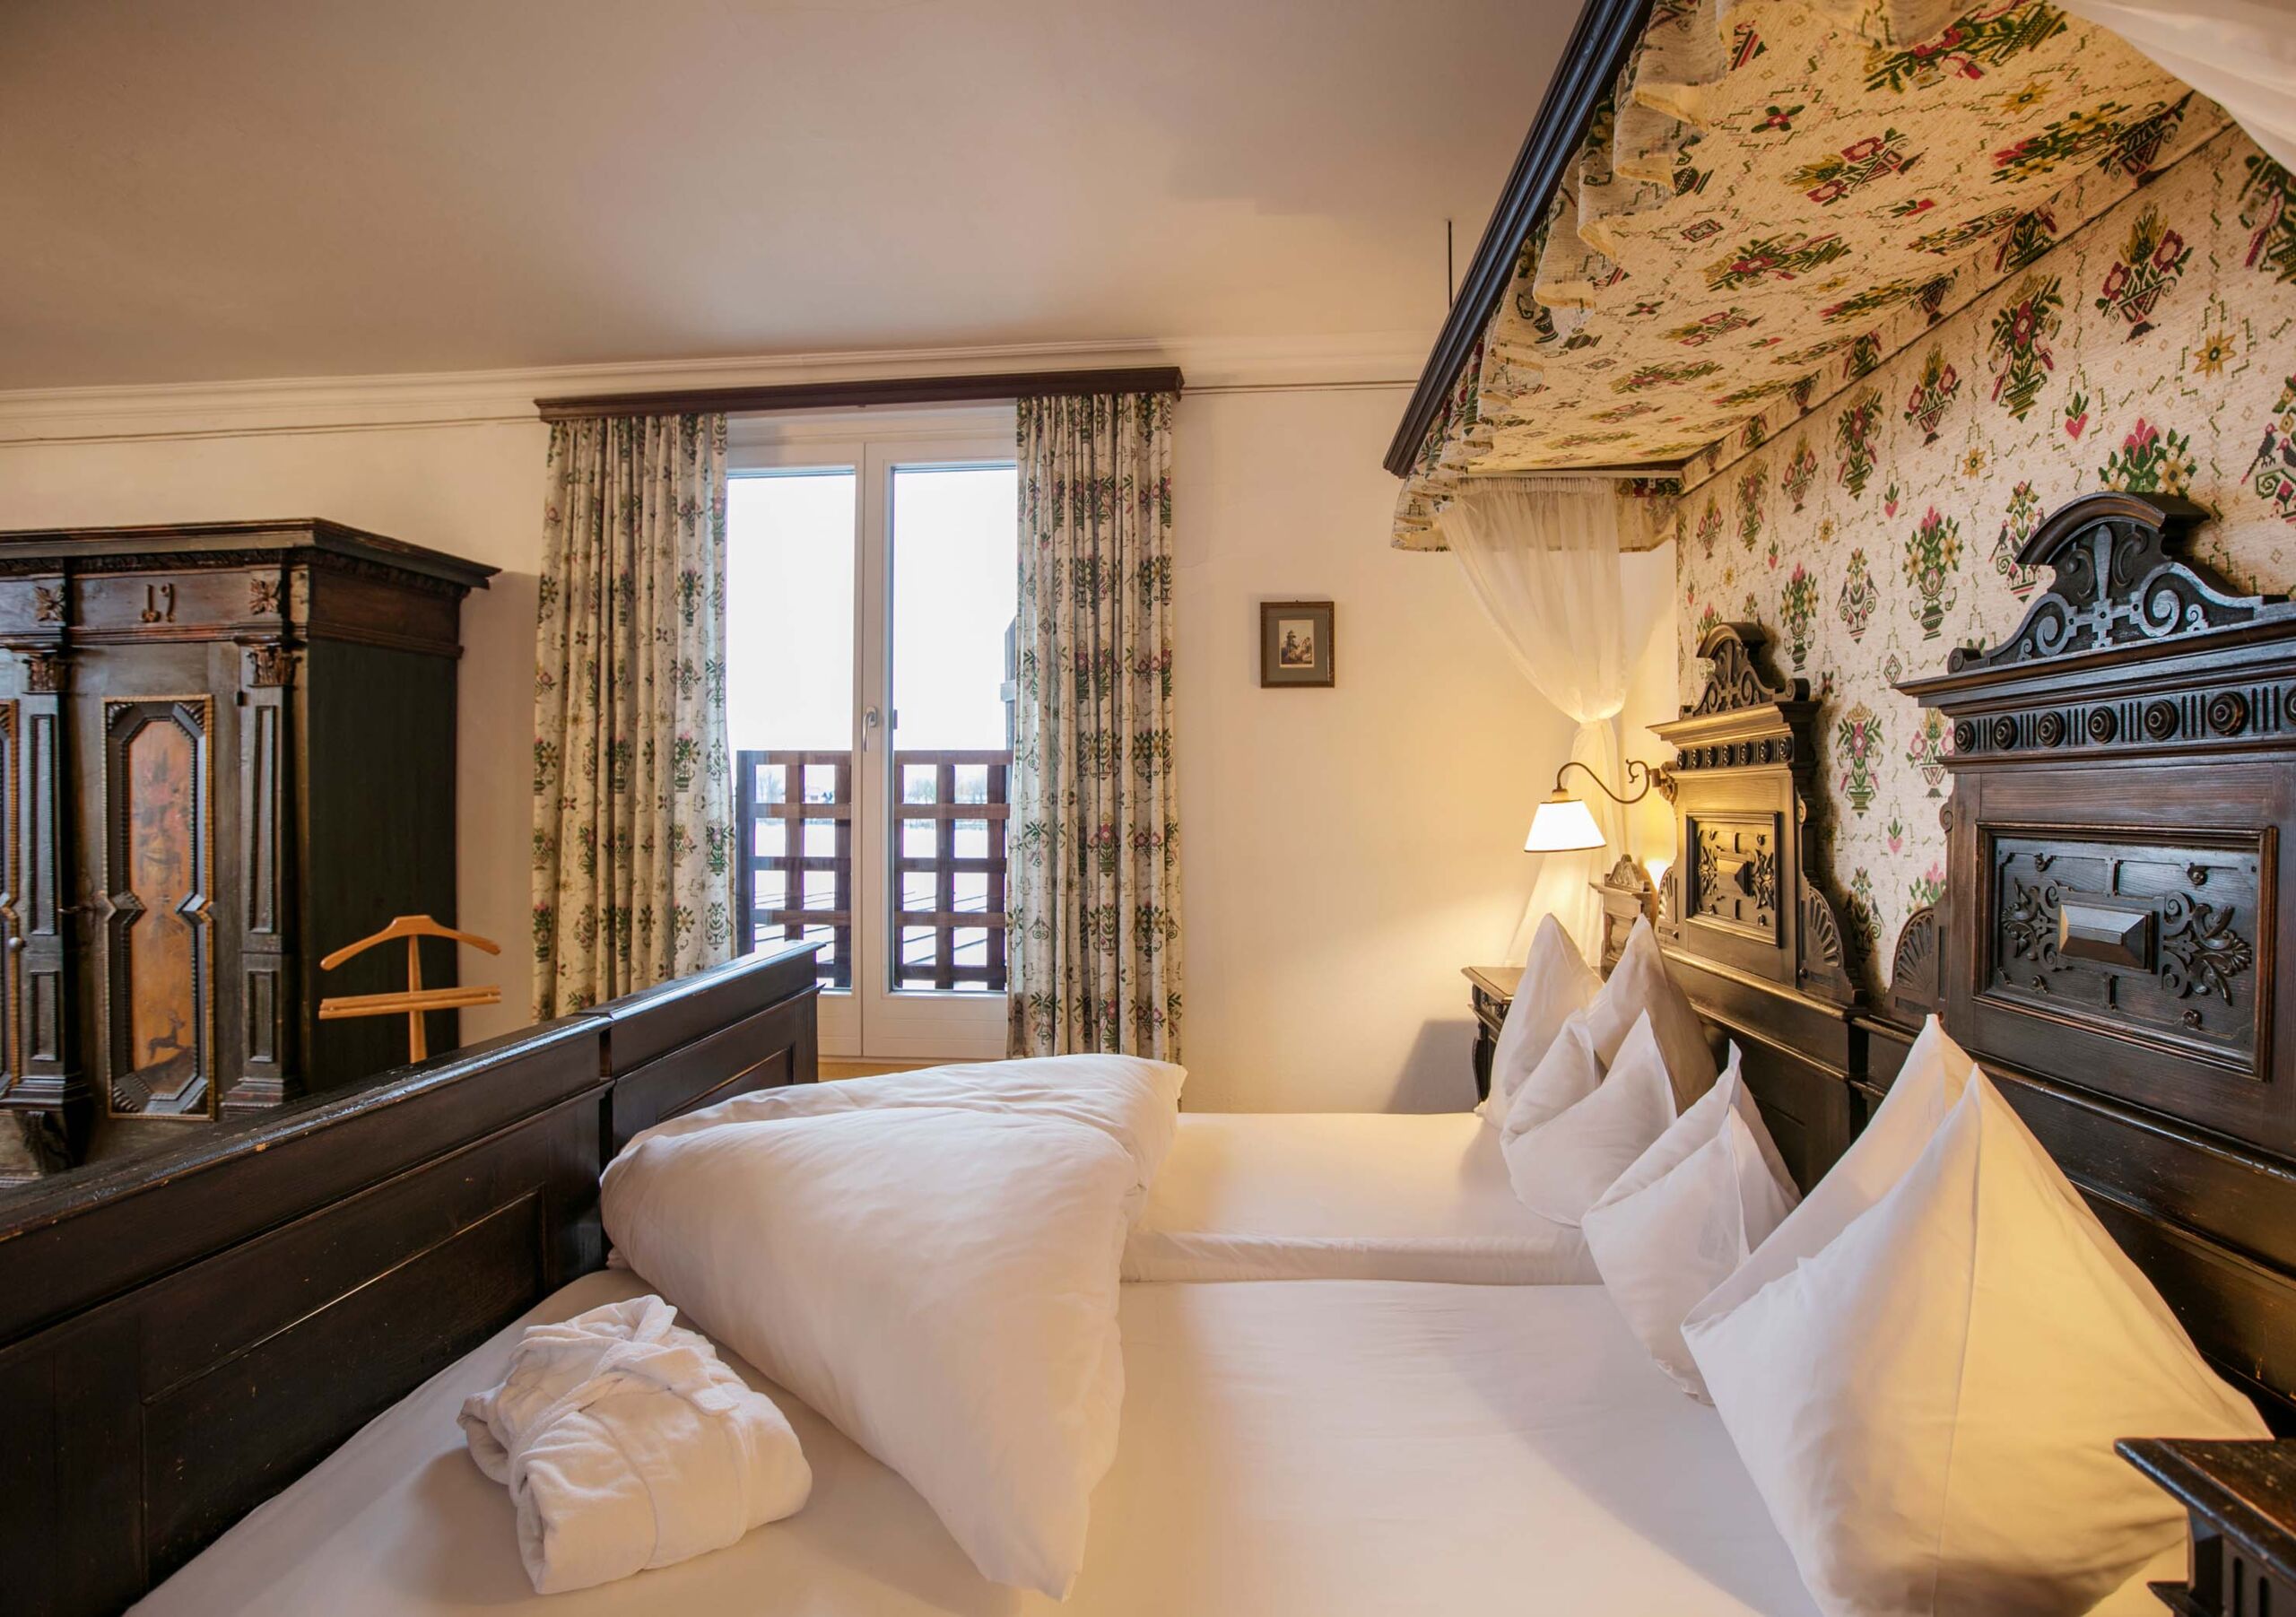 Zimmer mit Seebalkon im Weissen Rössl in altertümlichen Stil, mit einem schönen antiken Hand verzierten Holzschrank und einem ebenso schönen Altertümlich verziertes Bett